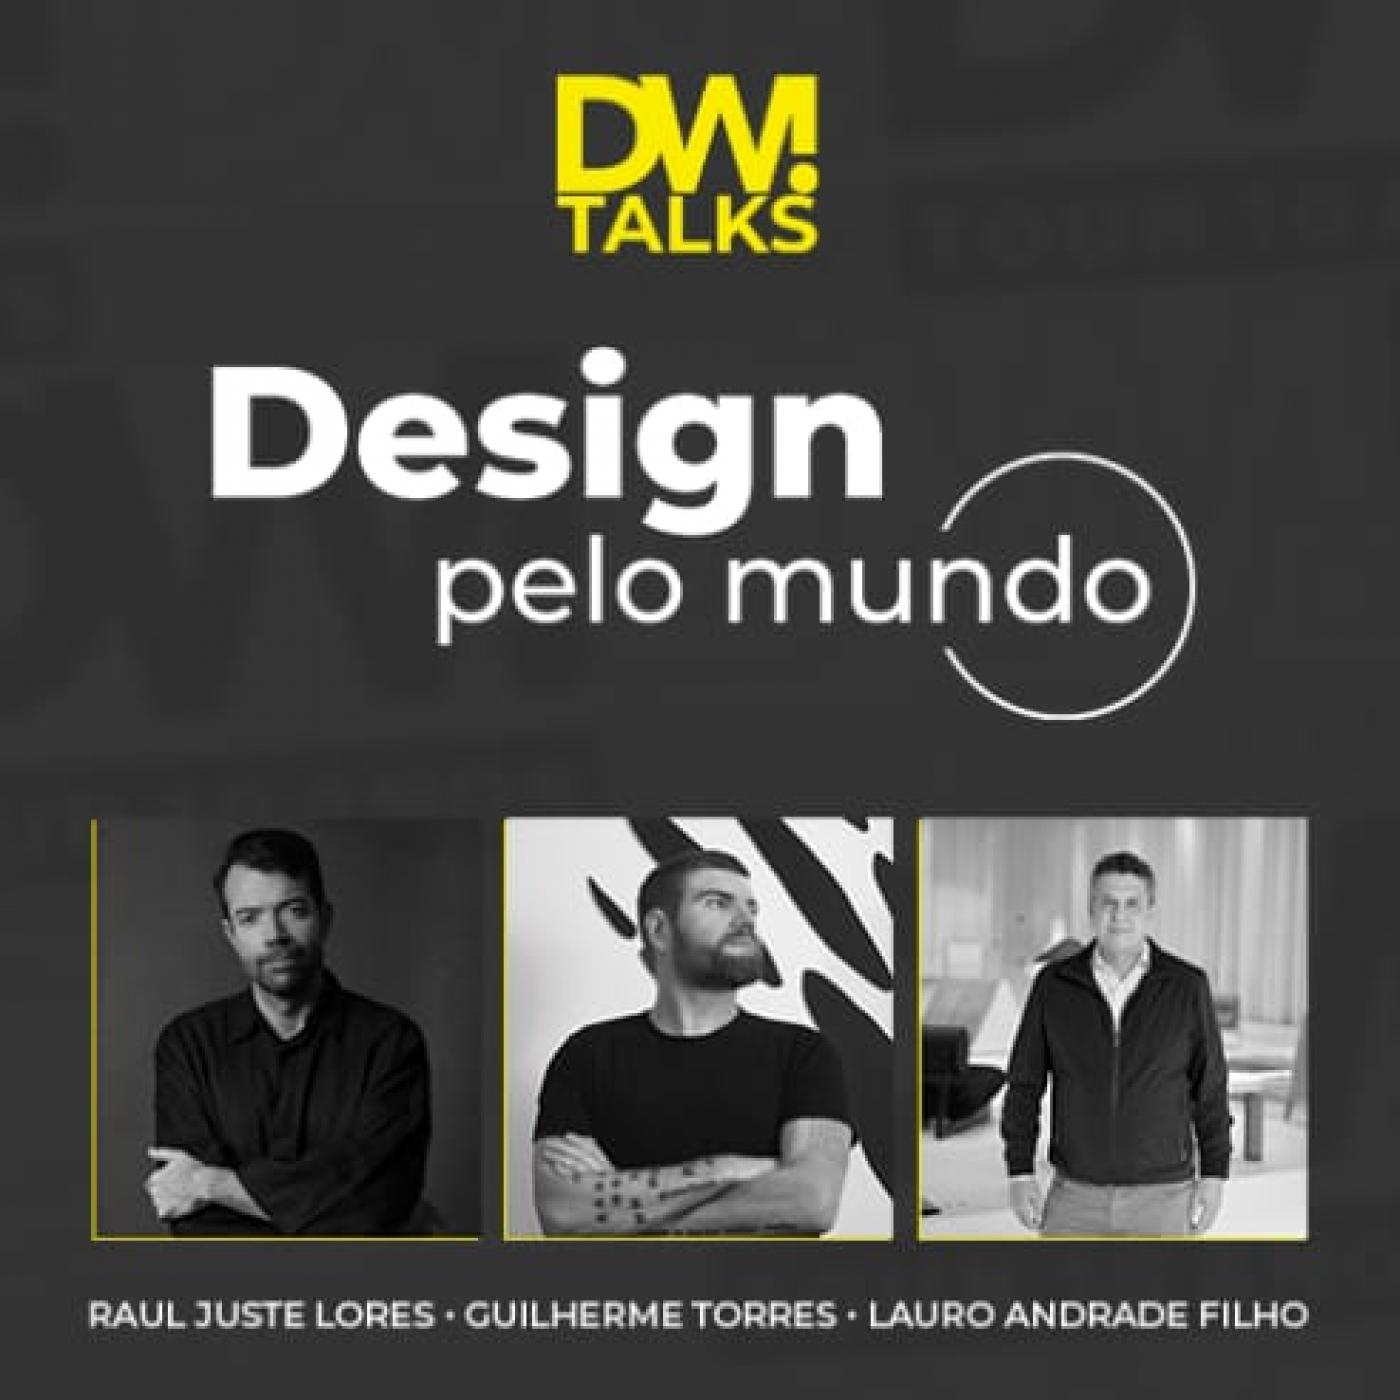 Banner de divulgação do evento Design pelo Mundo com fotos de três profissionais. #pracegover